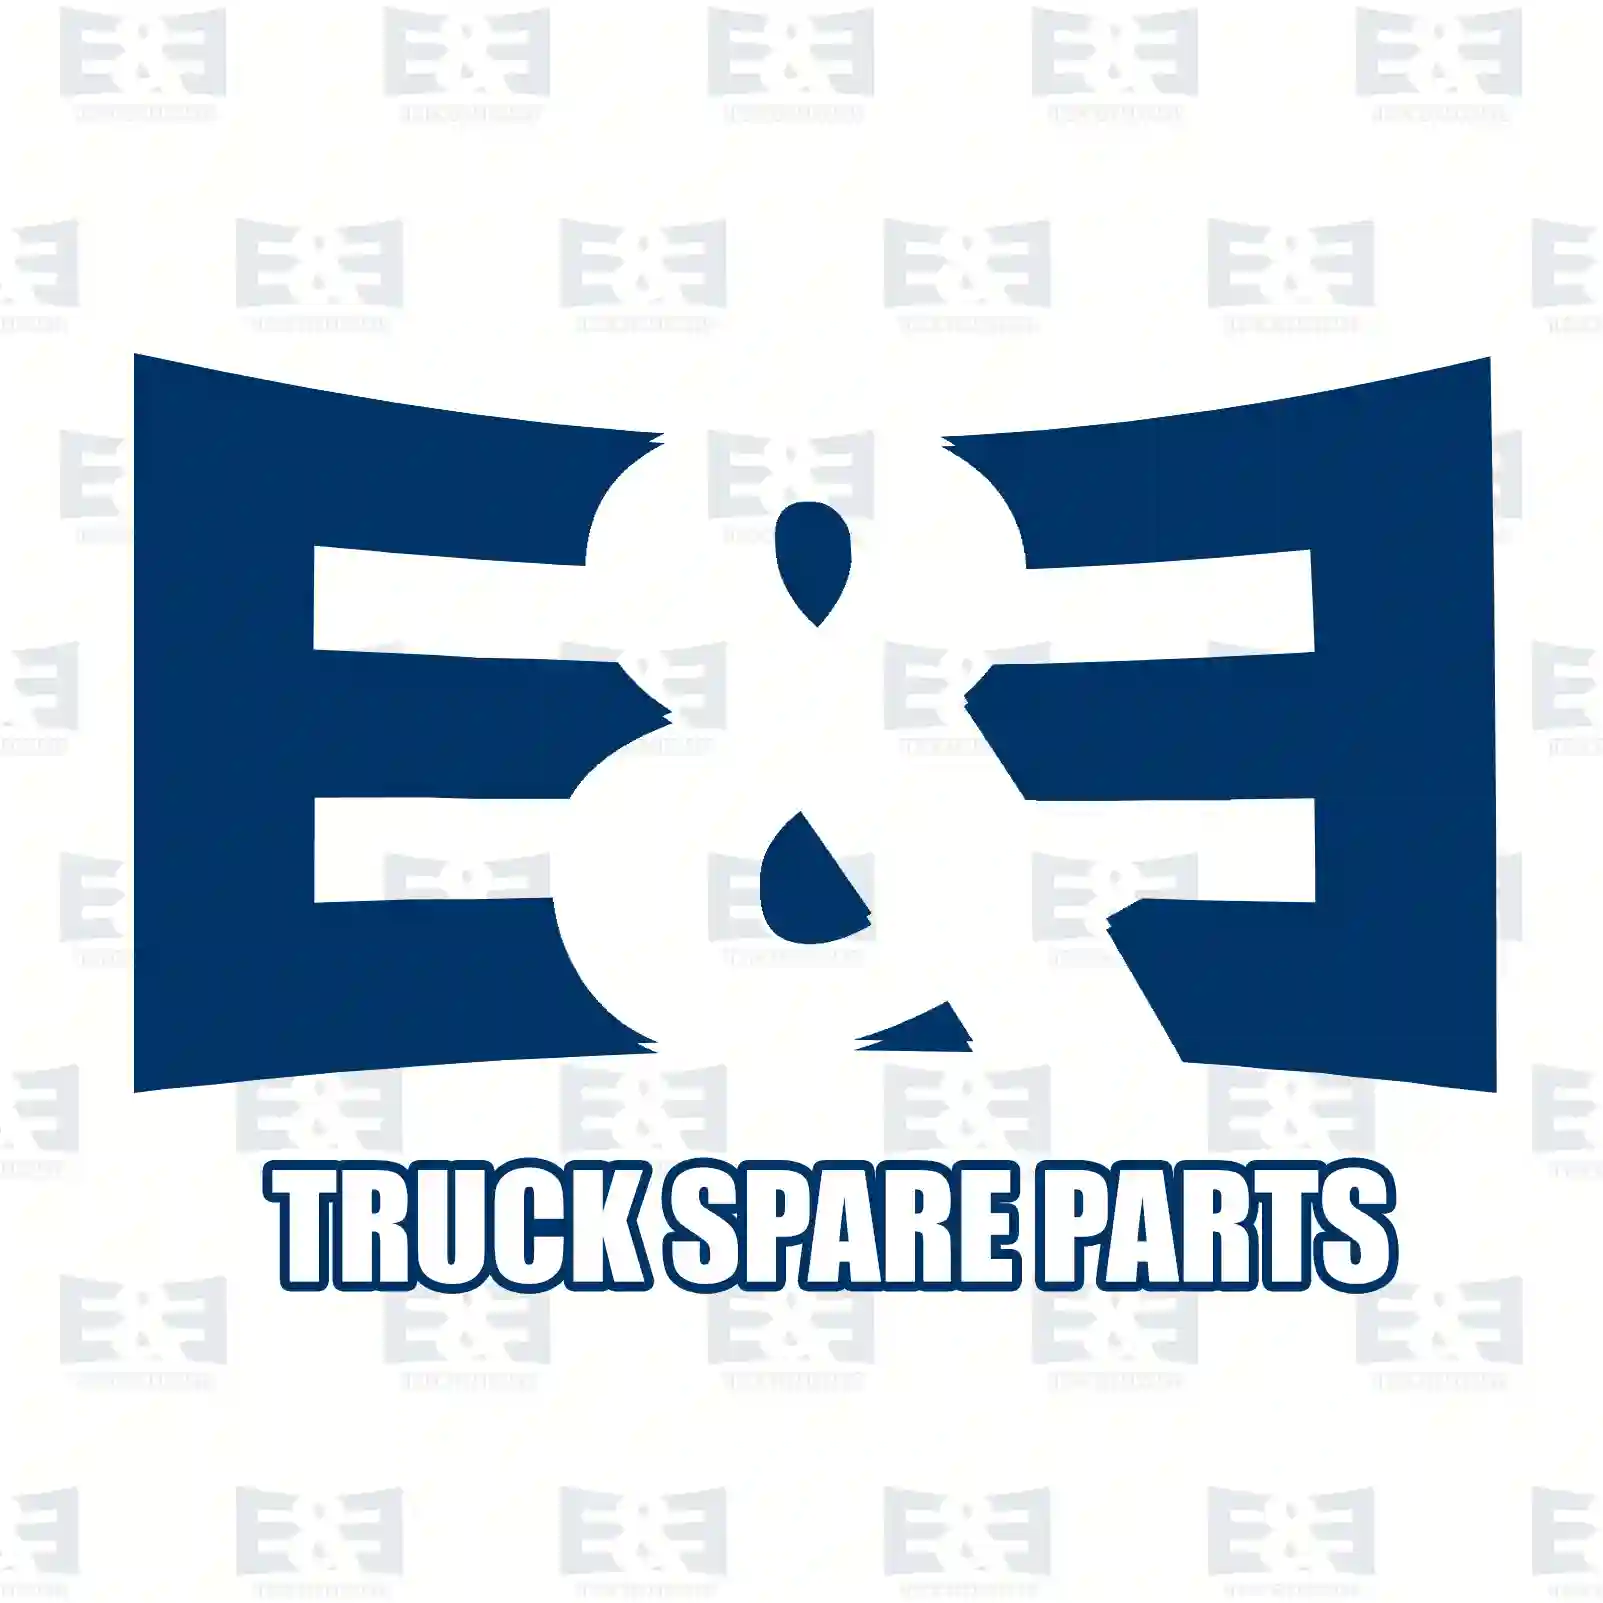 Ball joint, 2E2279270, 1761714, 2237343, ZG40129-0008 ||  2E2279270 E&E Truck Spare Parts | Truck Spare Parts, Auotomotive Spare Parts Ball joint, 2E2279270, 1761714, 2237343, ZG40129-0008 ||  2E2279270 E&E Truck Spare Parts | Truck Spare Parts, Auotomotive Spare Parts